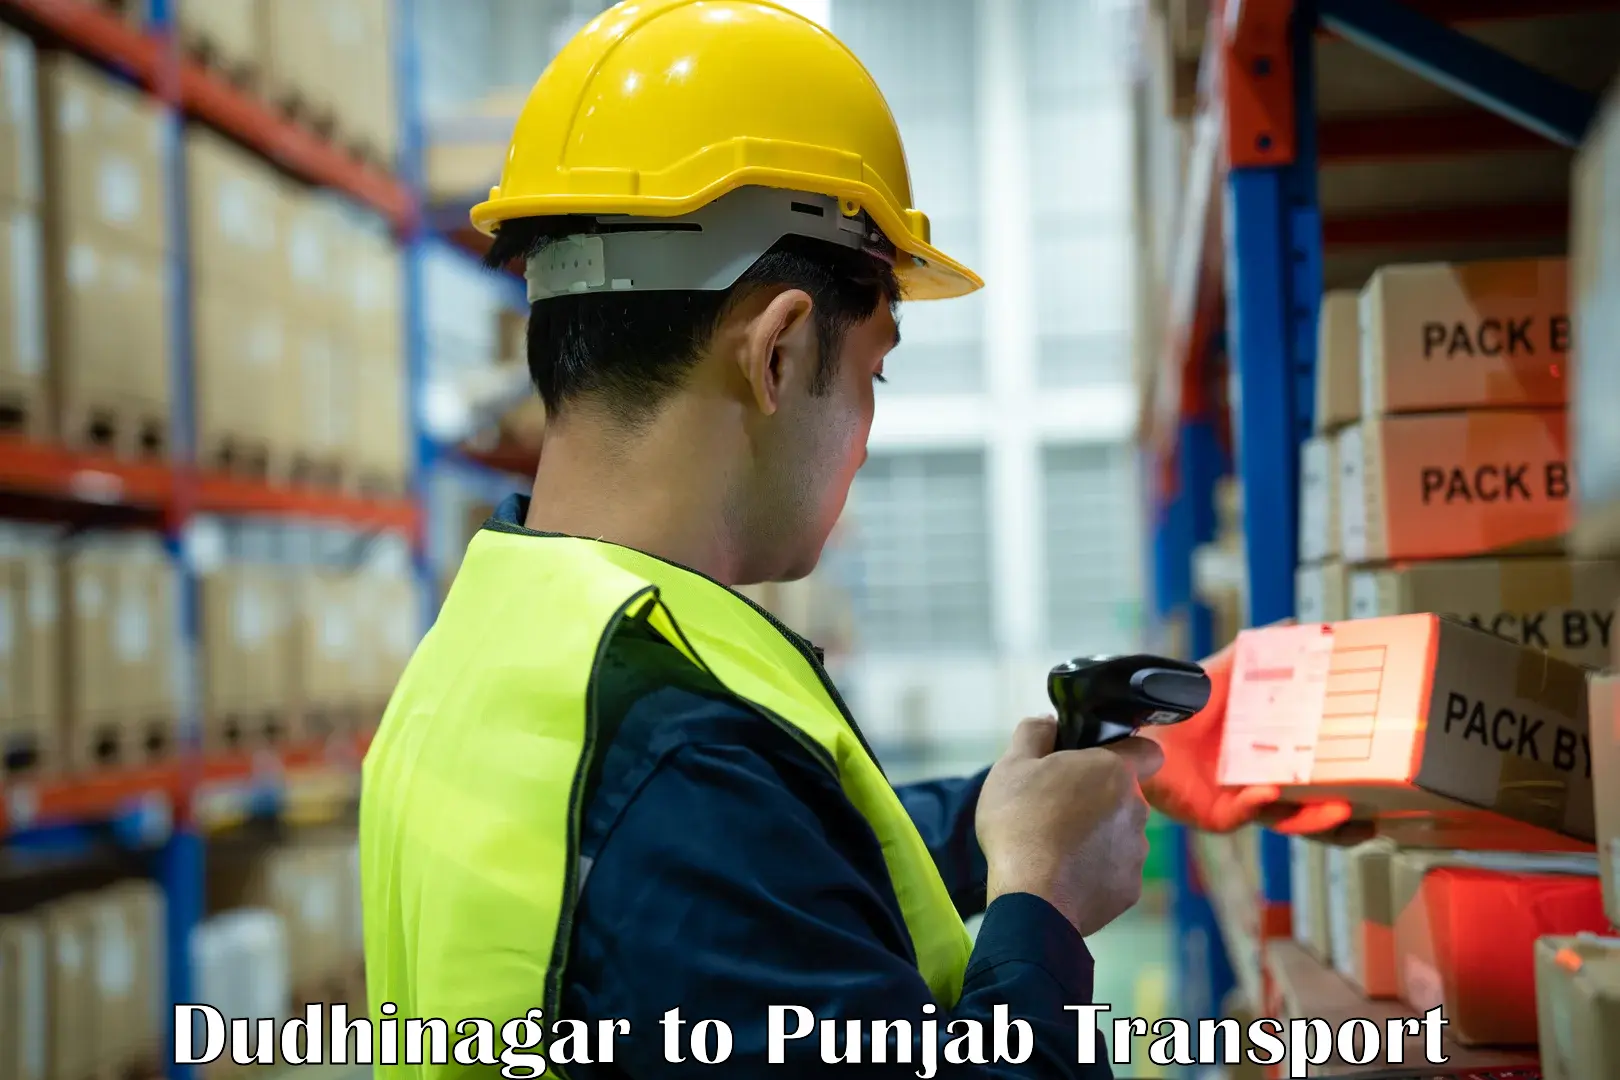 International cargo transportation services Dudhinagar to Ropar